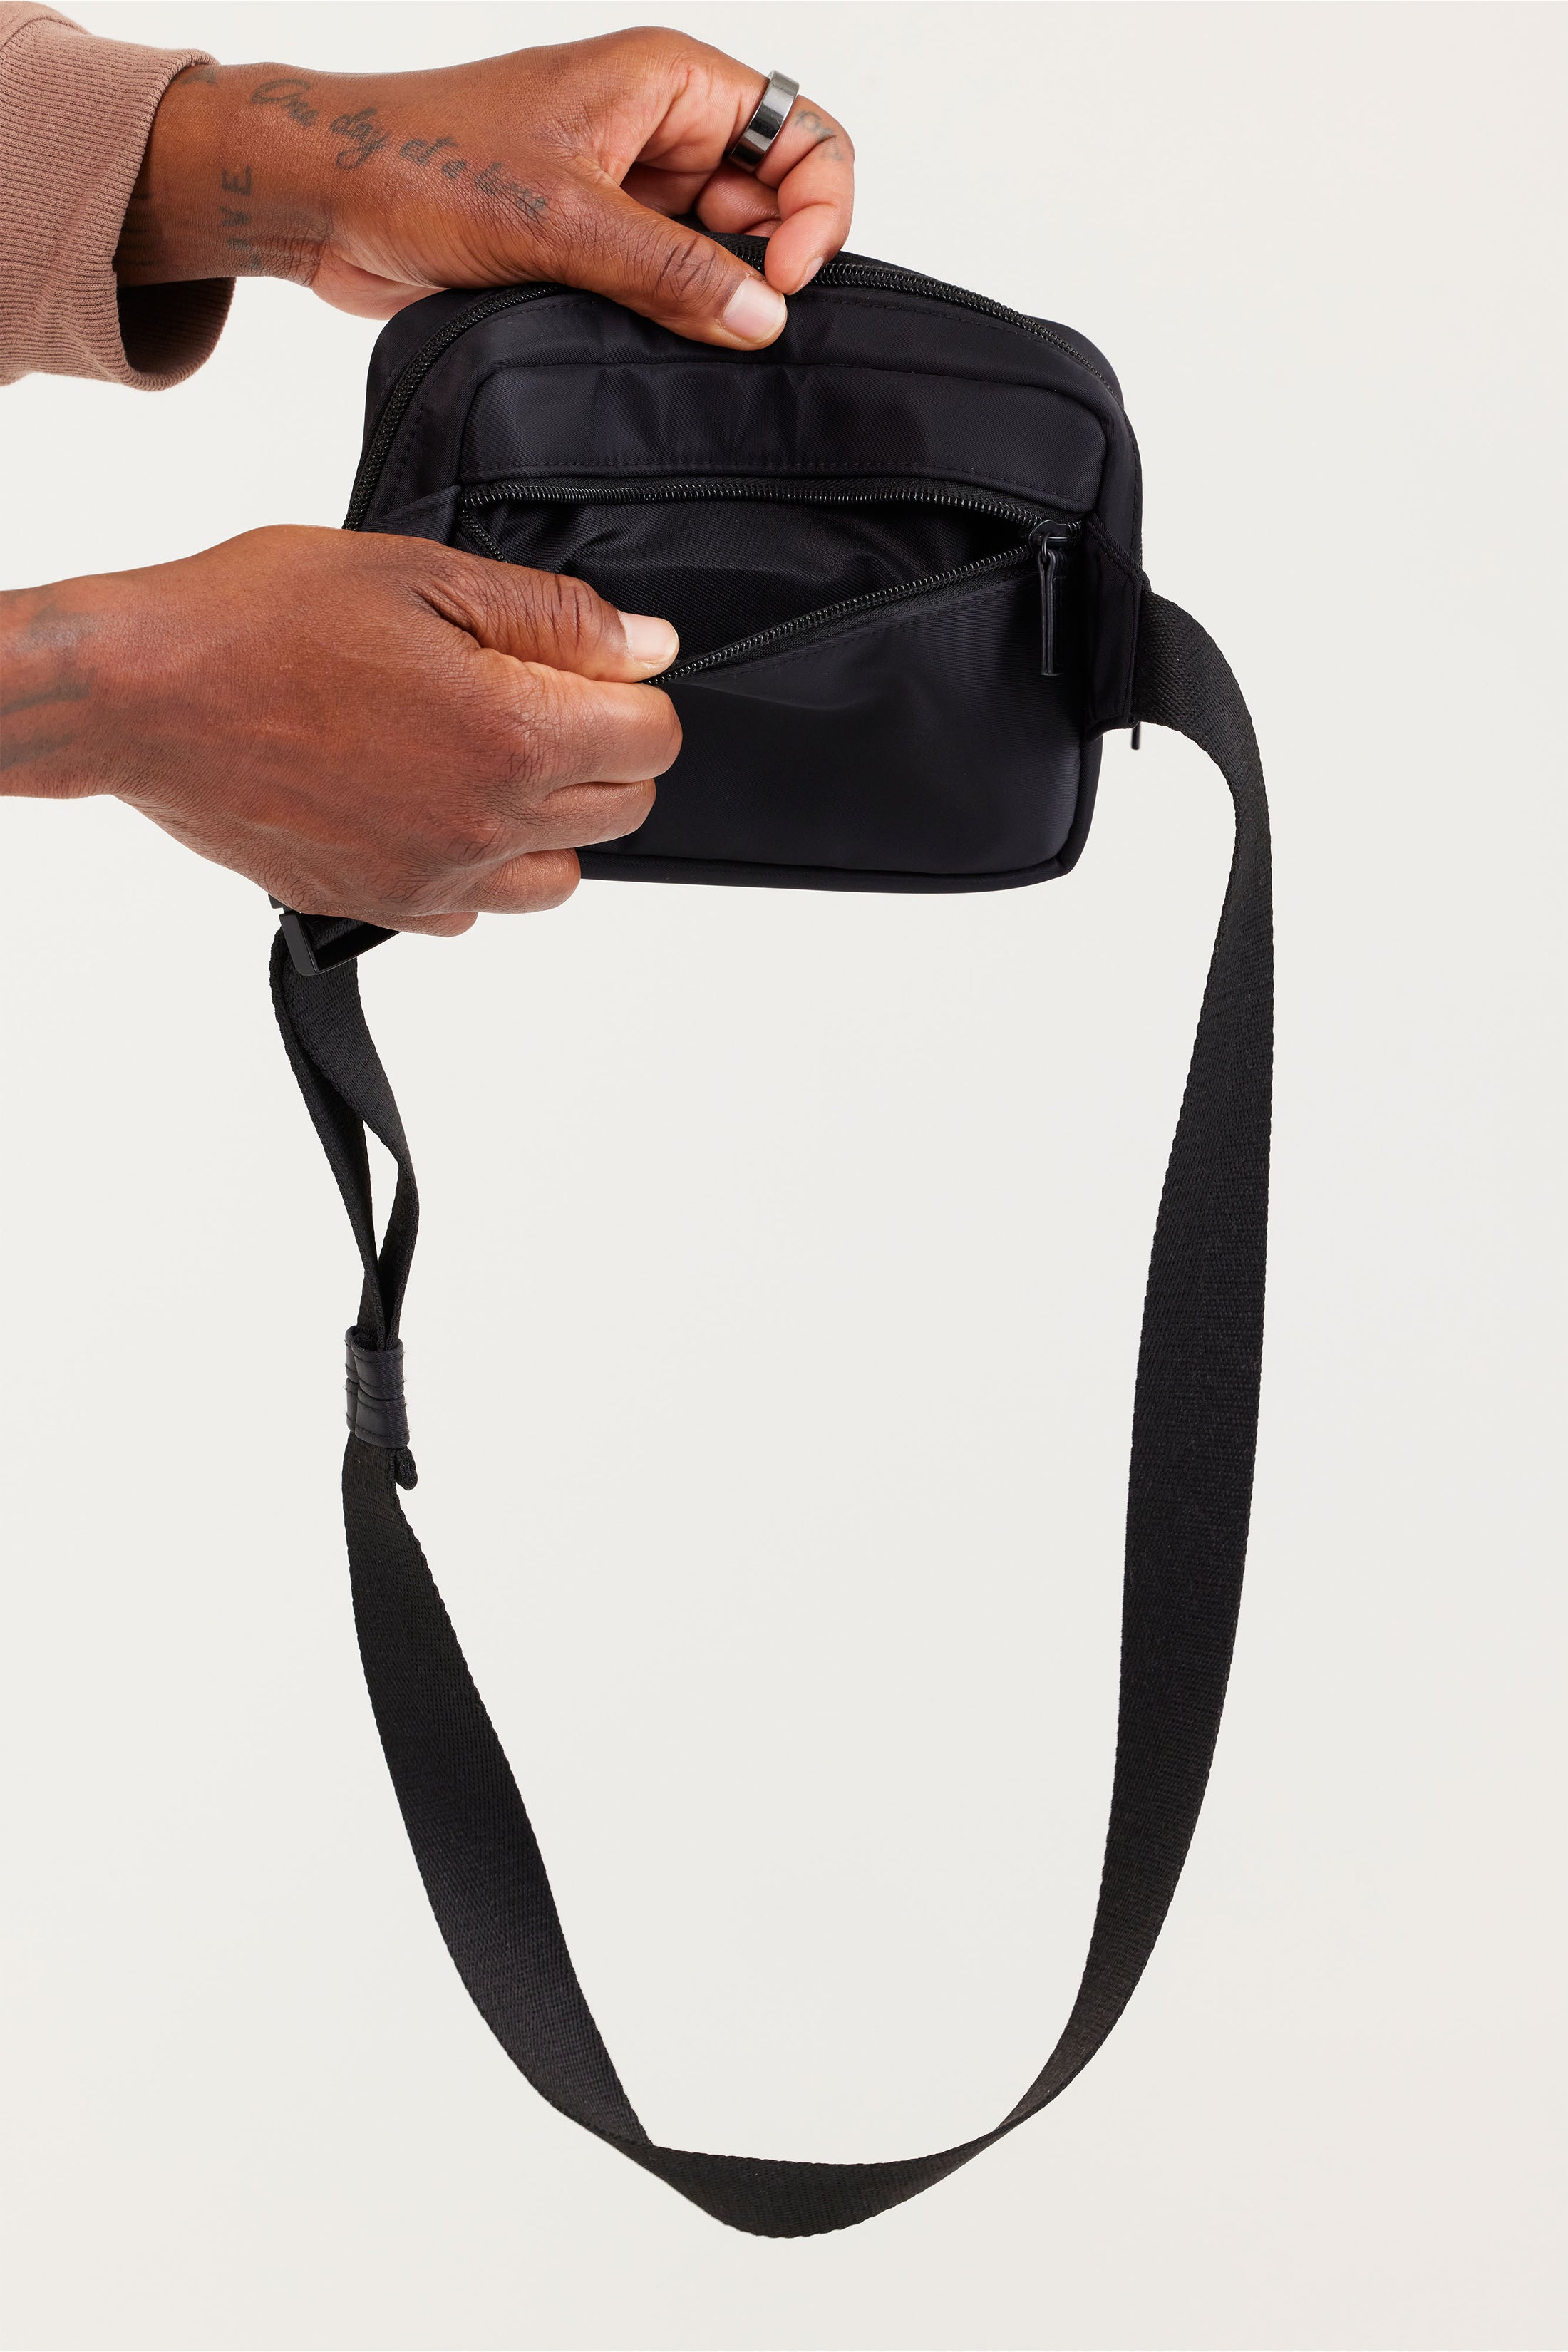 Béis 'The Belt Bag' In Black - Black Everyday Belt Bag